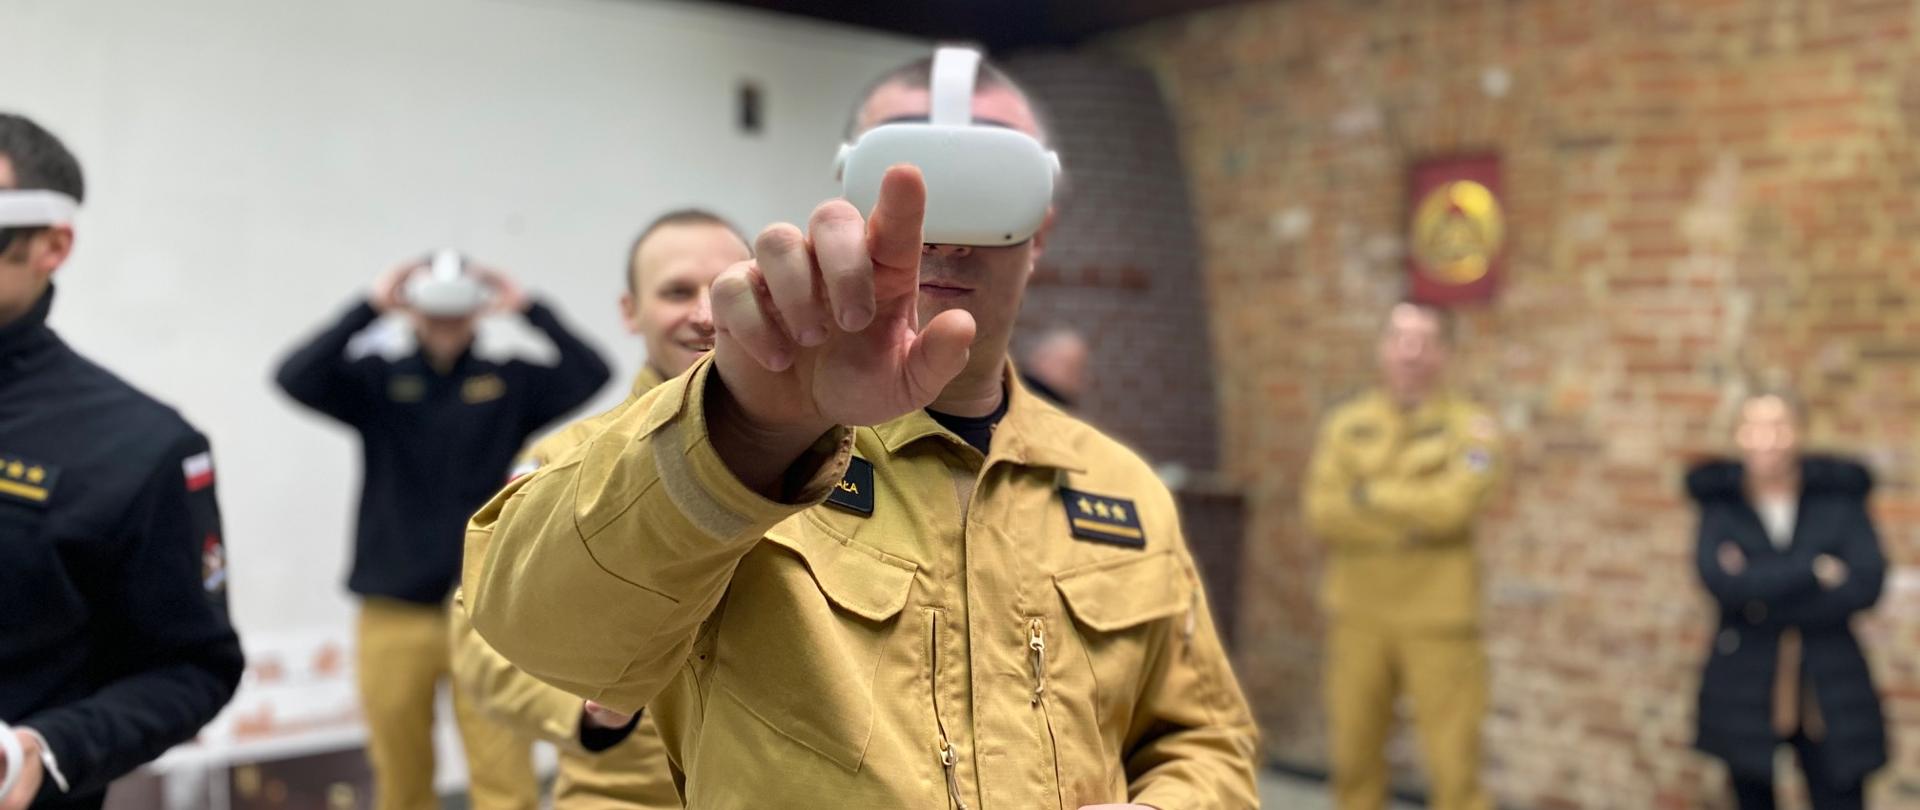 Na pierwszym planie strażak w mundurze służbowym z goglami VR na głowie/ Palcem wskazującym celuje w obiektyw. Za nim kilka osób ćwiczących. 